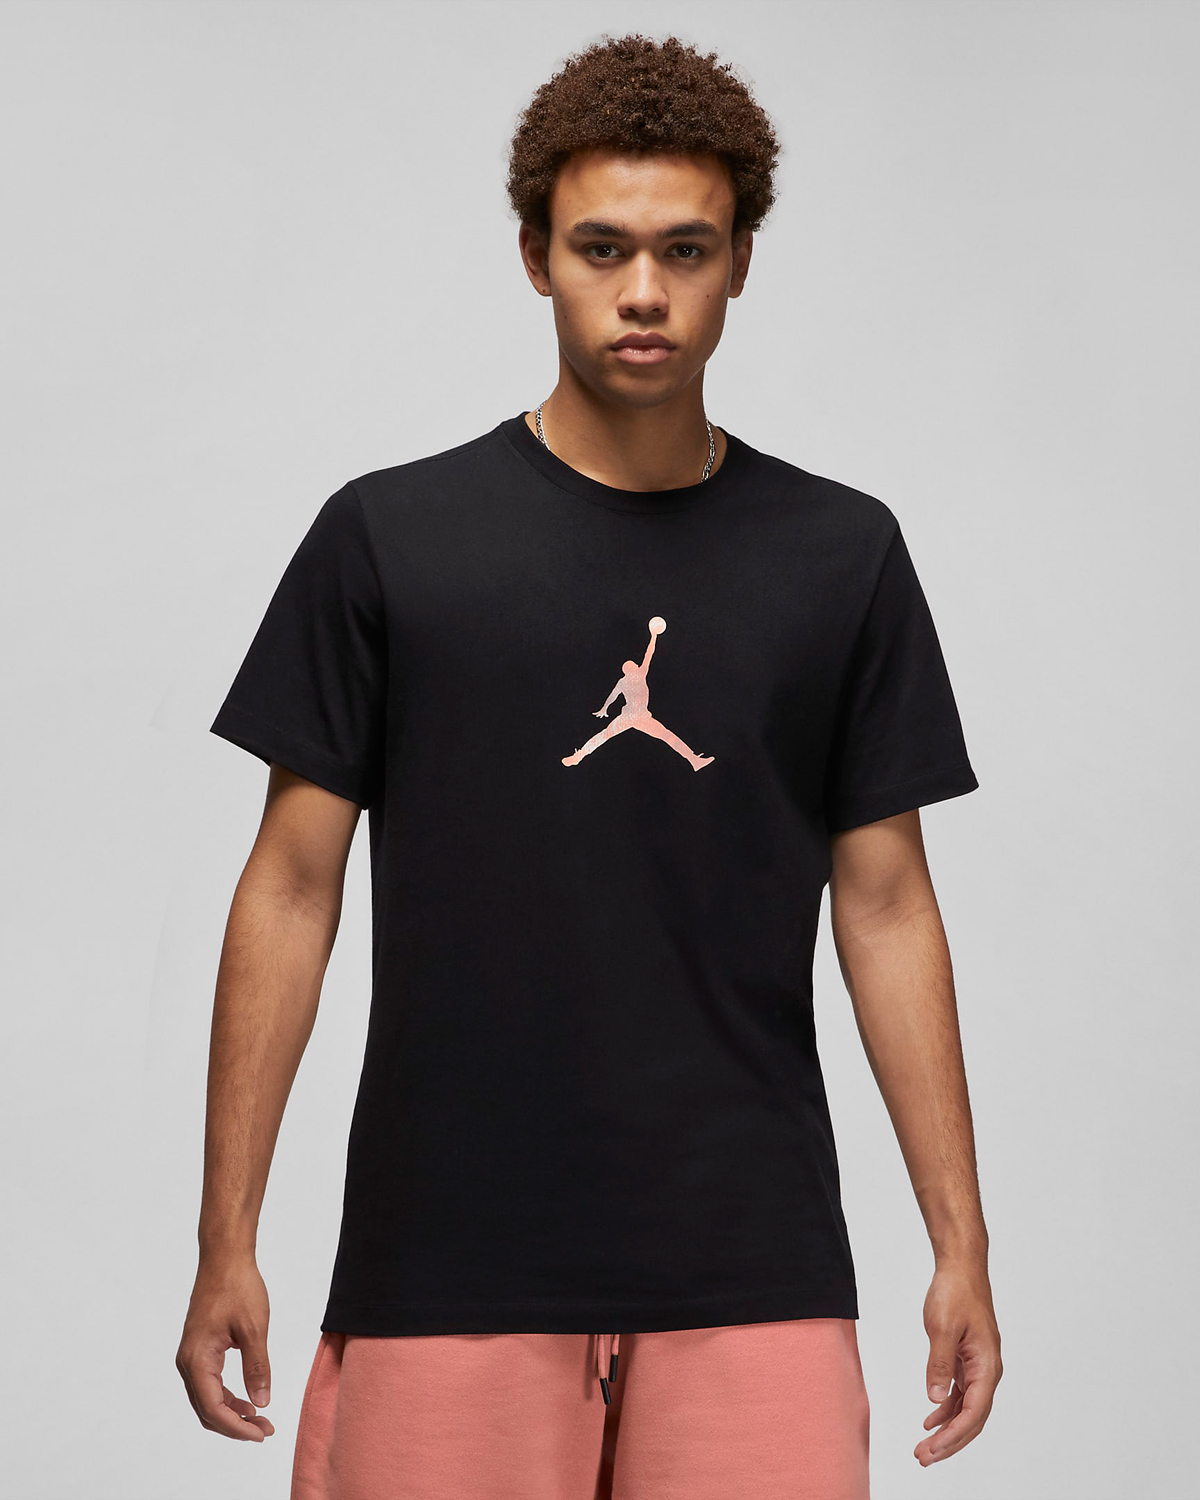 jordan-sport-dna-tie-dye-t-shirt-black-coral-1